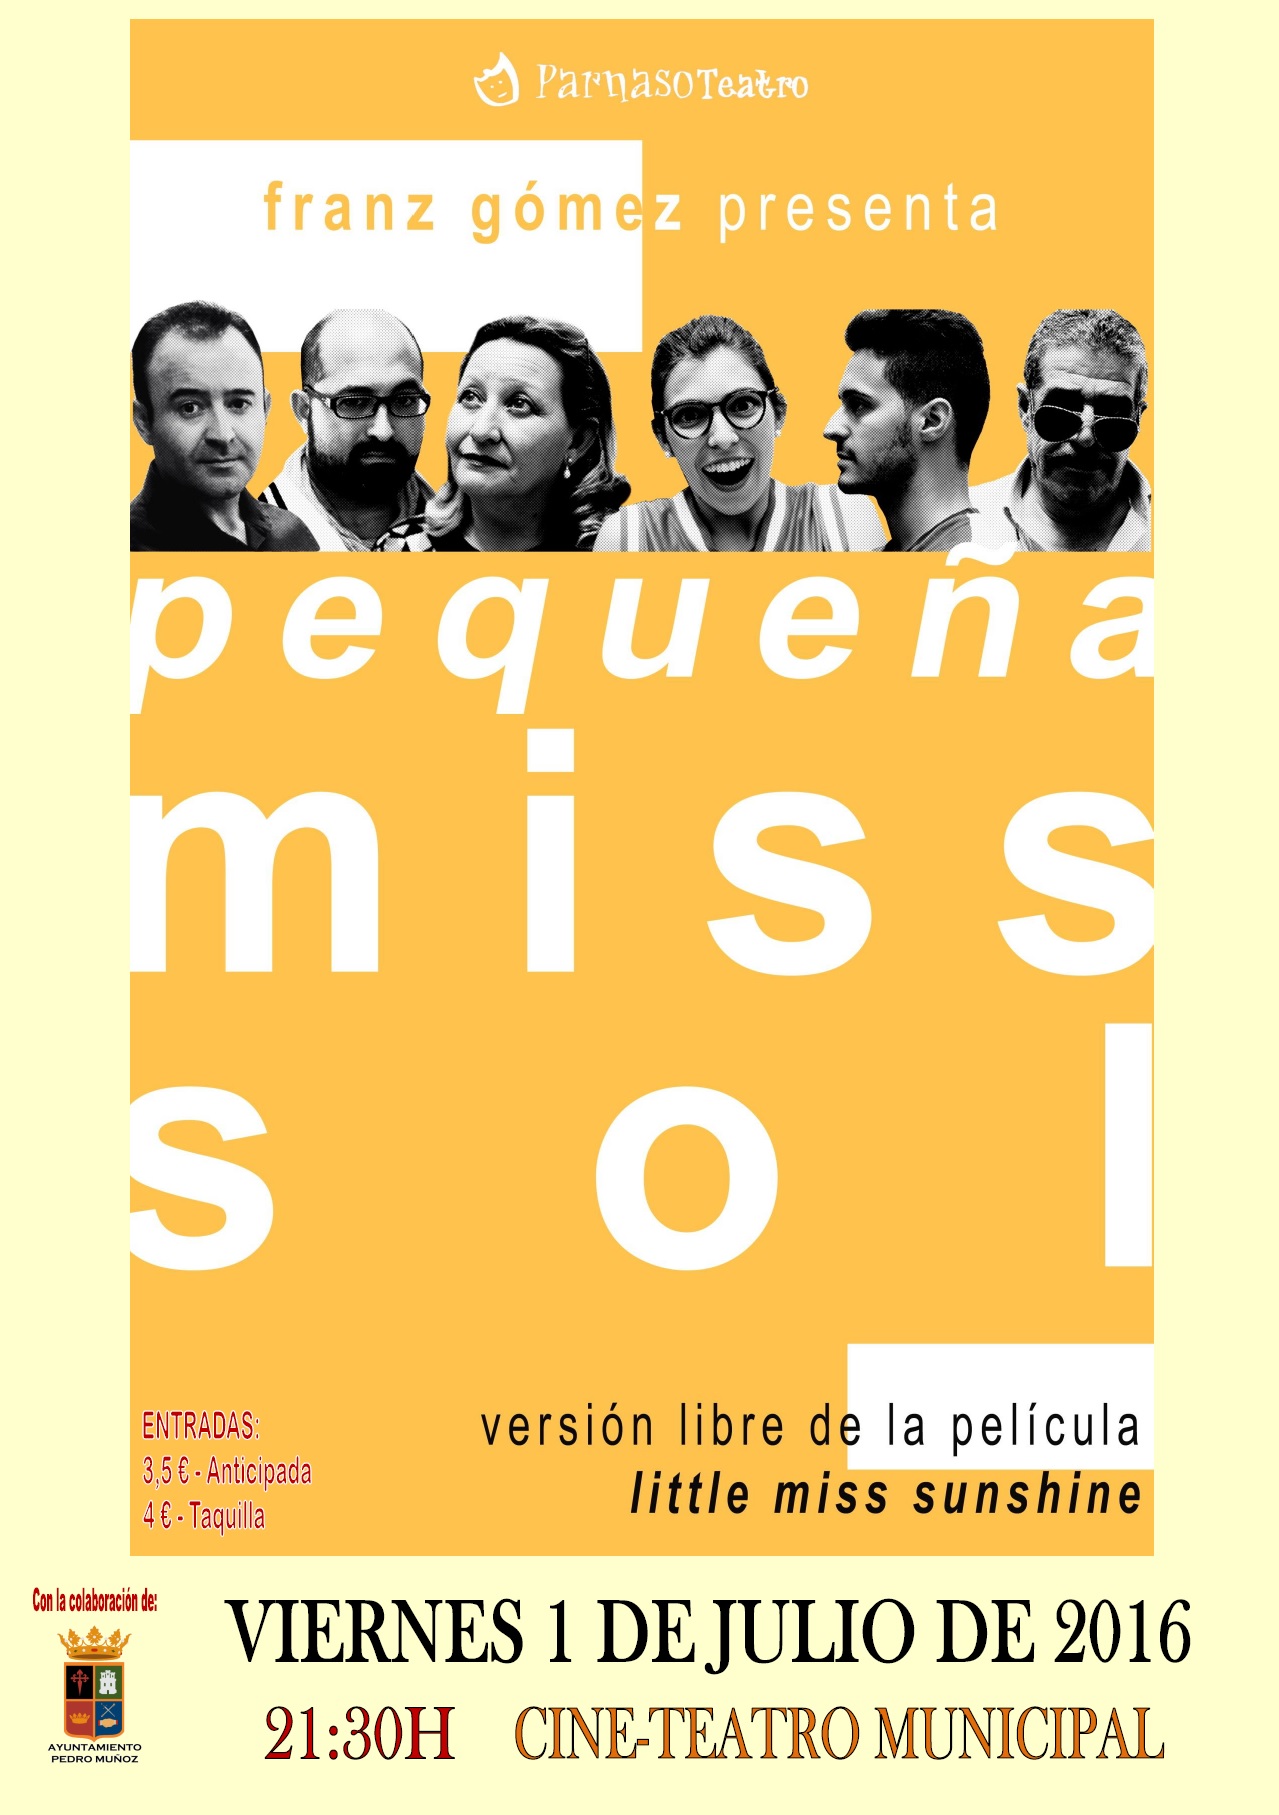 Parnaso Teatro estrena "Pequeña Miss Sol" el viernes 1 de julio a en el Cine-Teatro Municipal de Pedro Muñoz